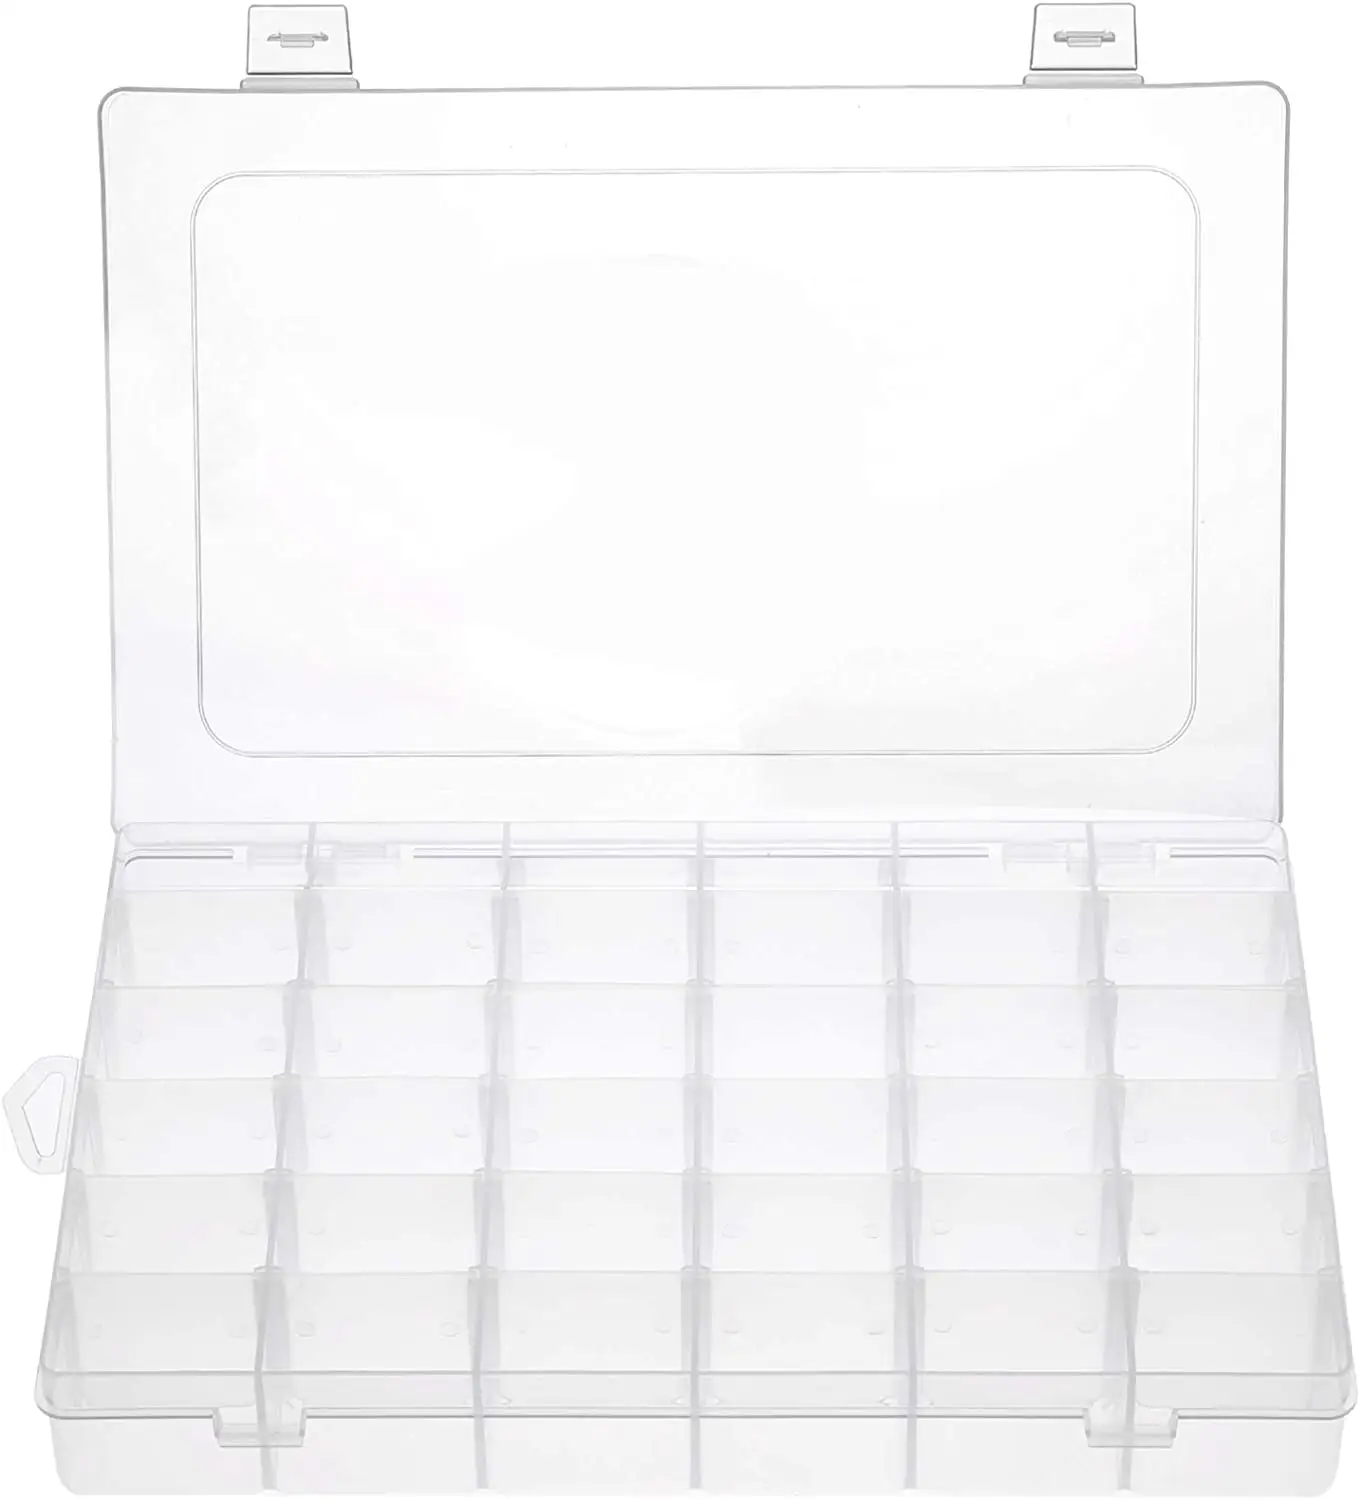 36グリッド透明プラスチックオーガナイザーボックス収納コンテナジュエリーボックス調節可能な仕切り縫製収納ボックス